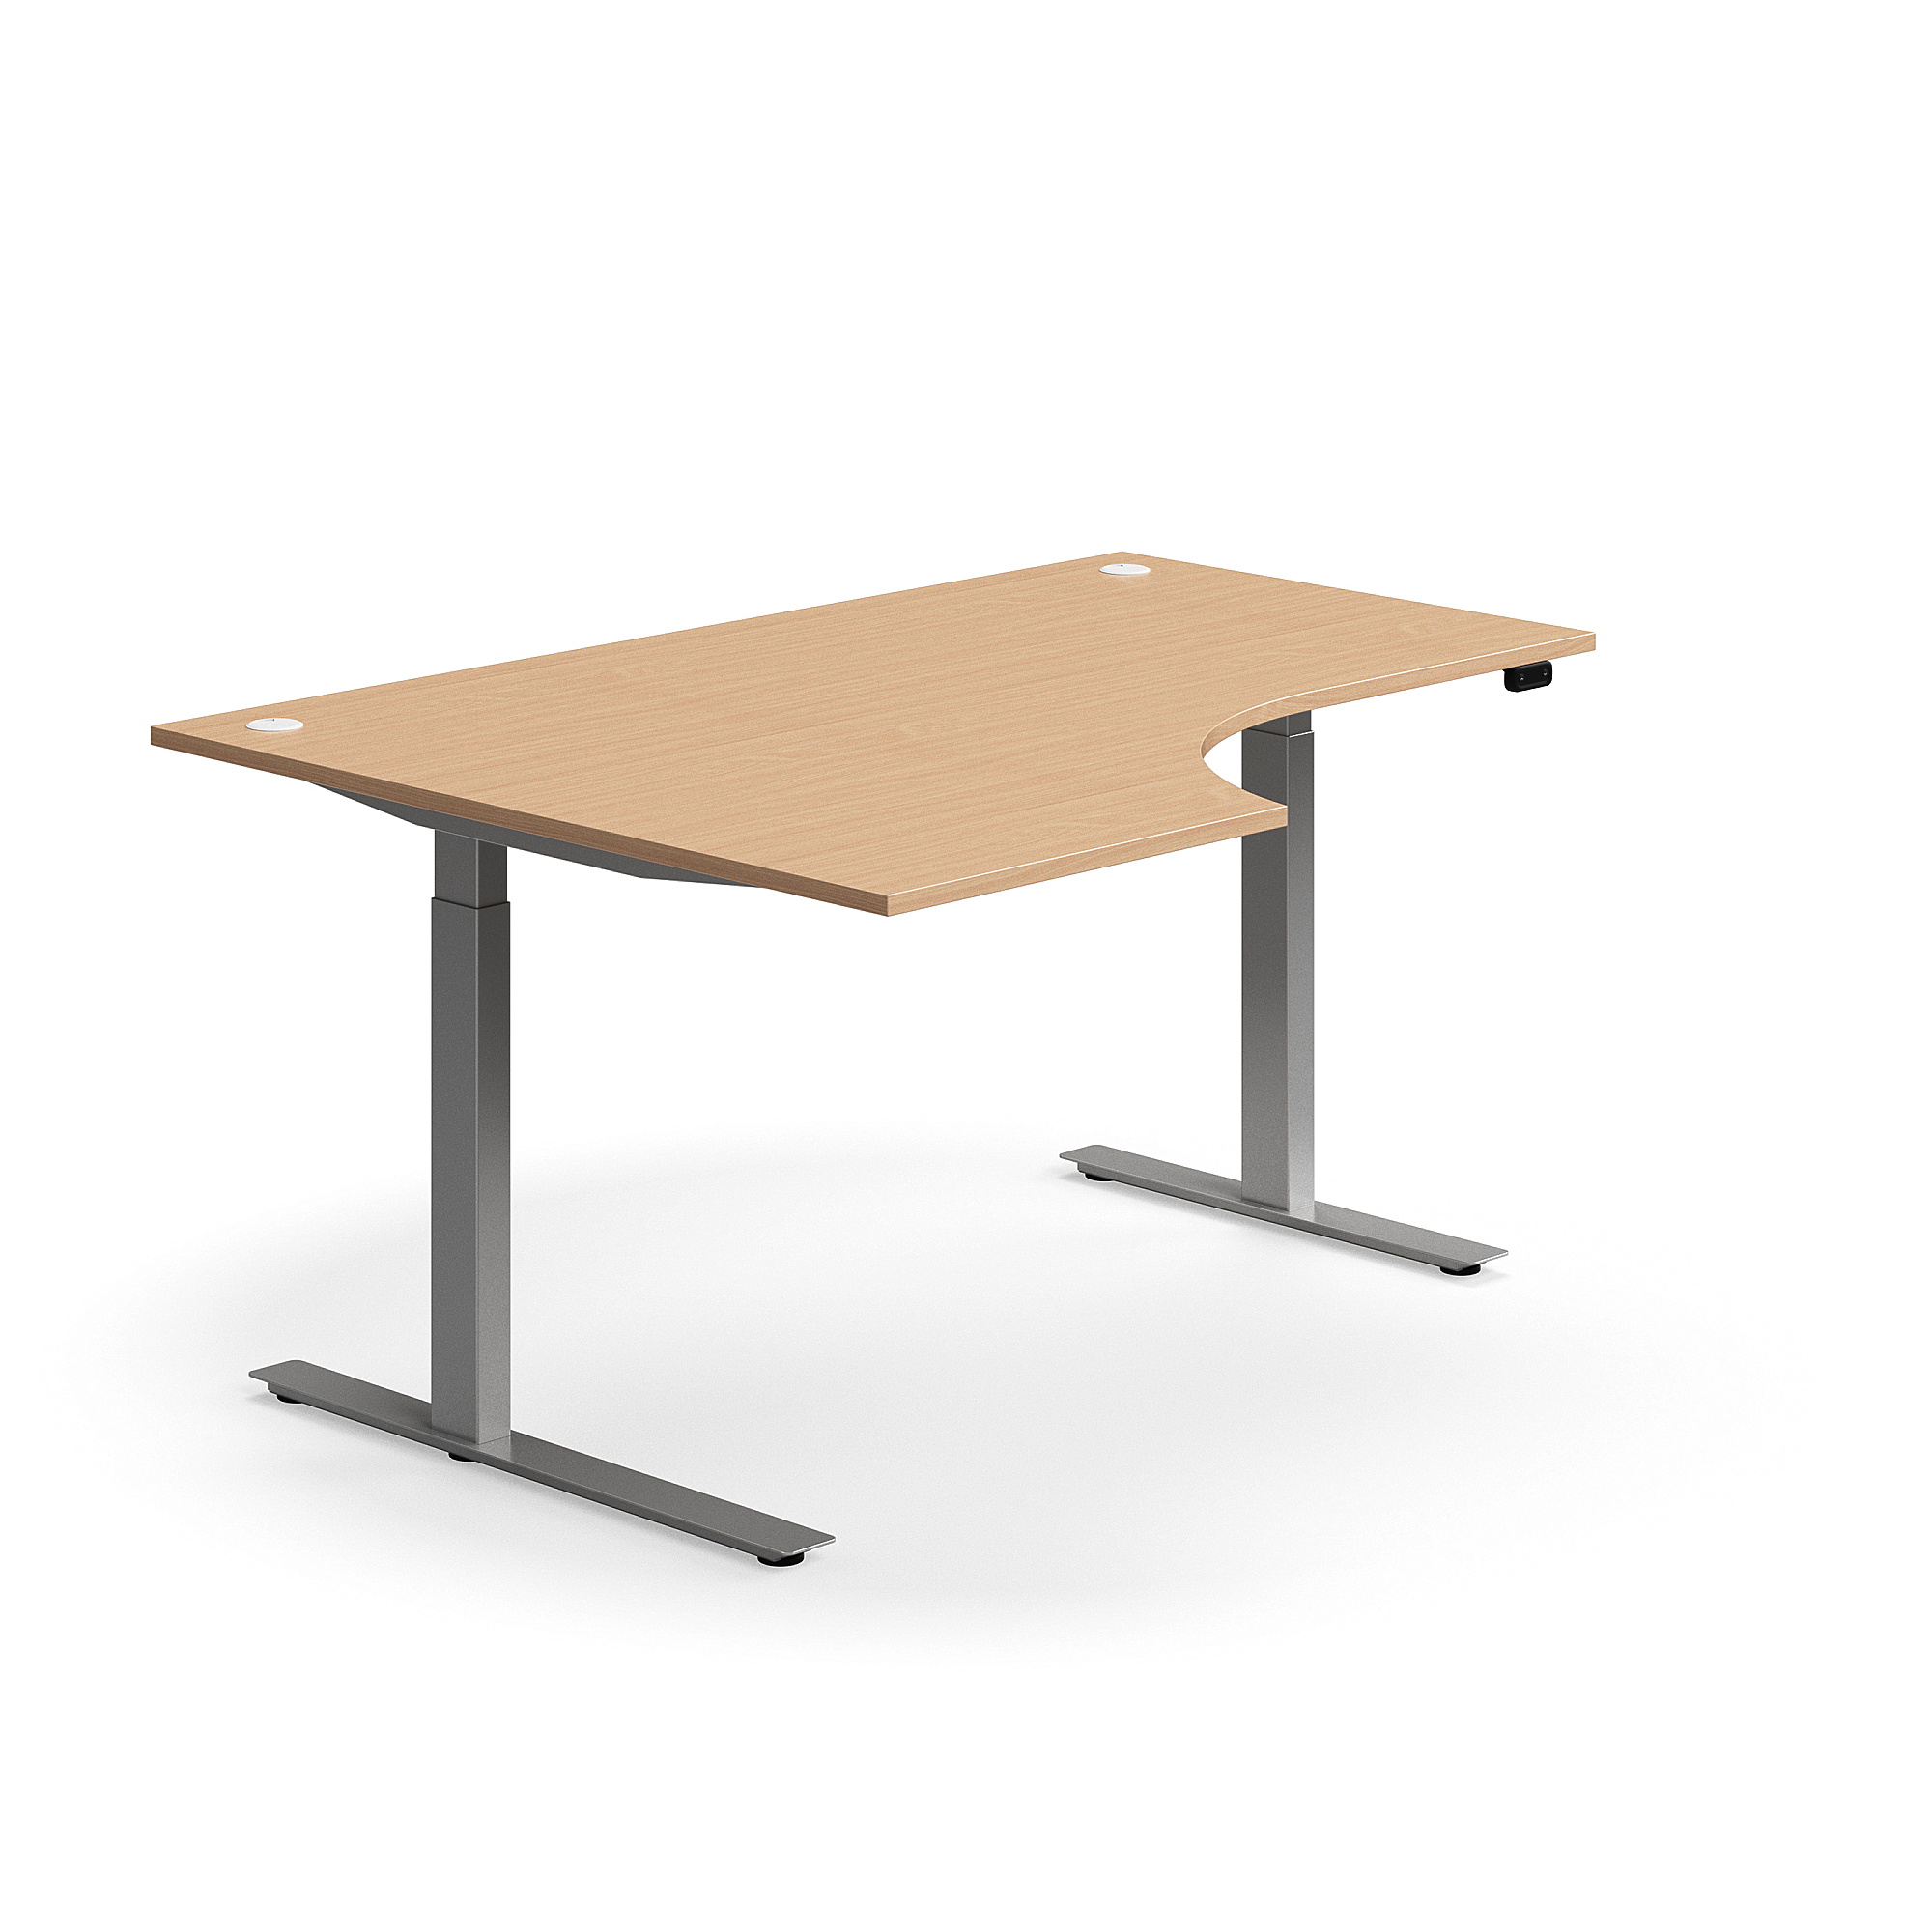 Výškově nastavitelný stůl FLEXUS, rohový, 1600x1200 mm, stříbrná podnož, buk